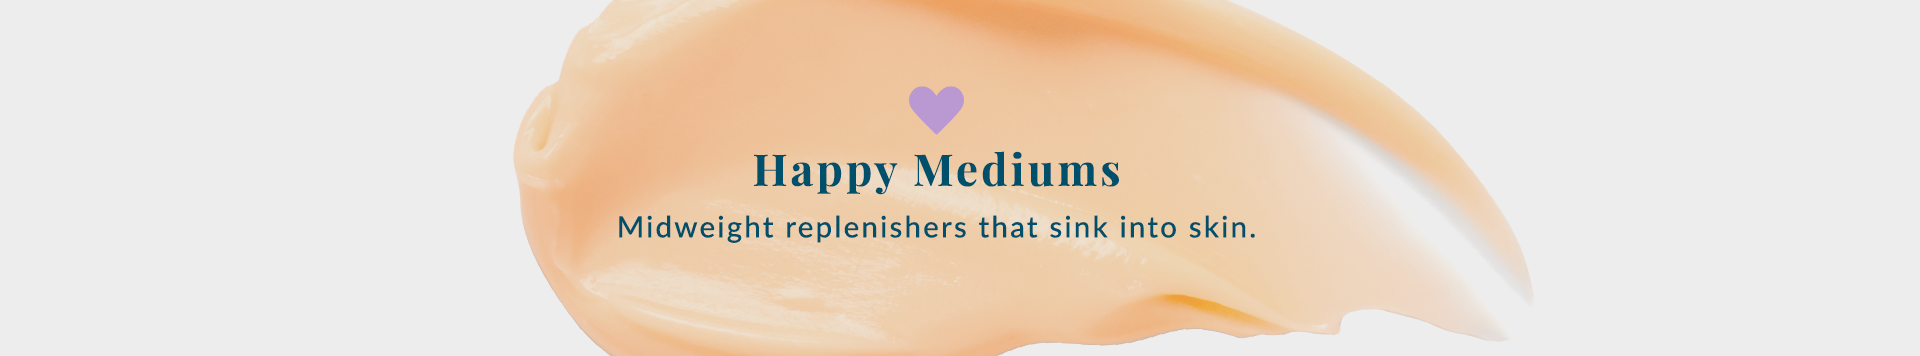 Happy Mediums